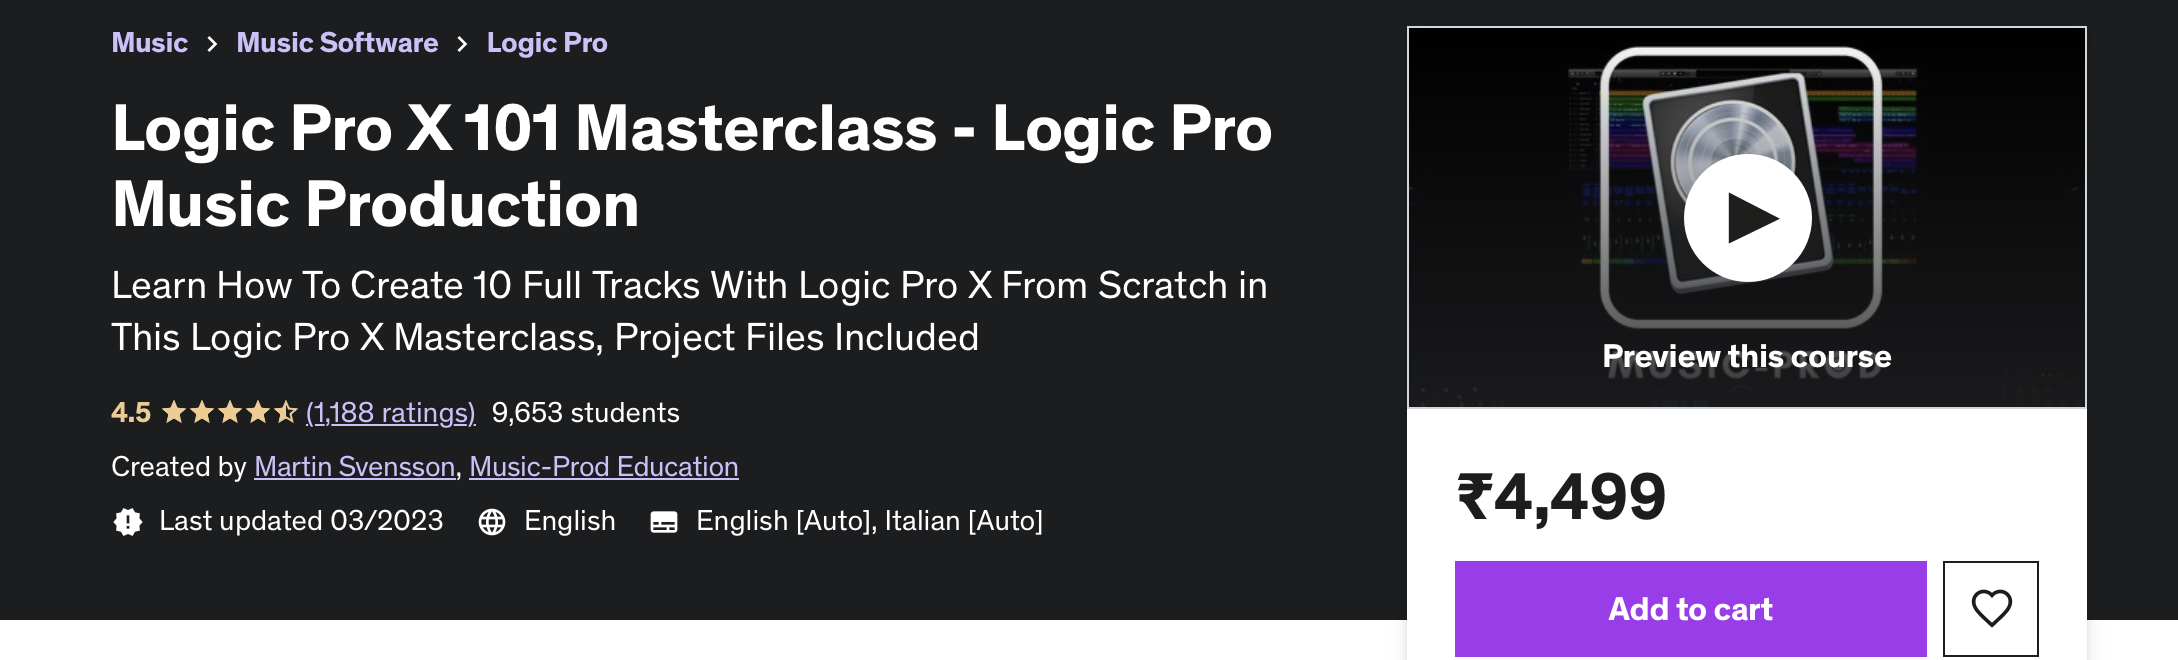 Logic Pro X 101 Masterclass - Logic Pro Music Production